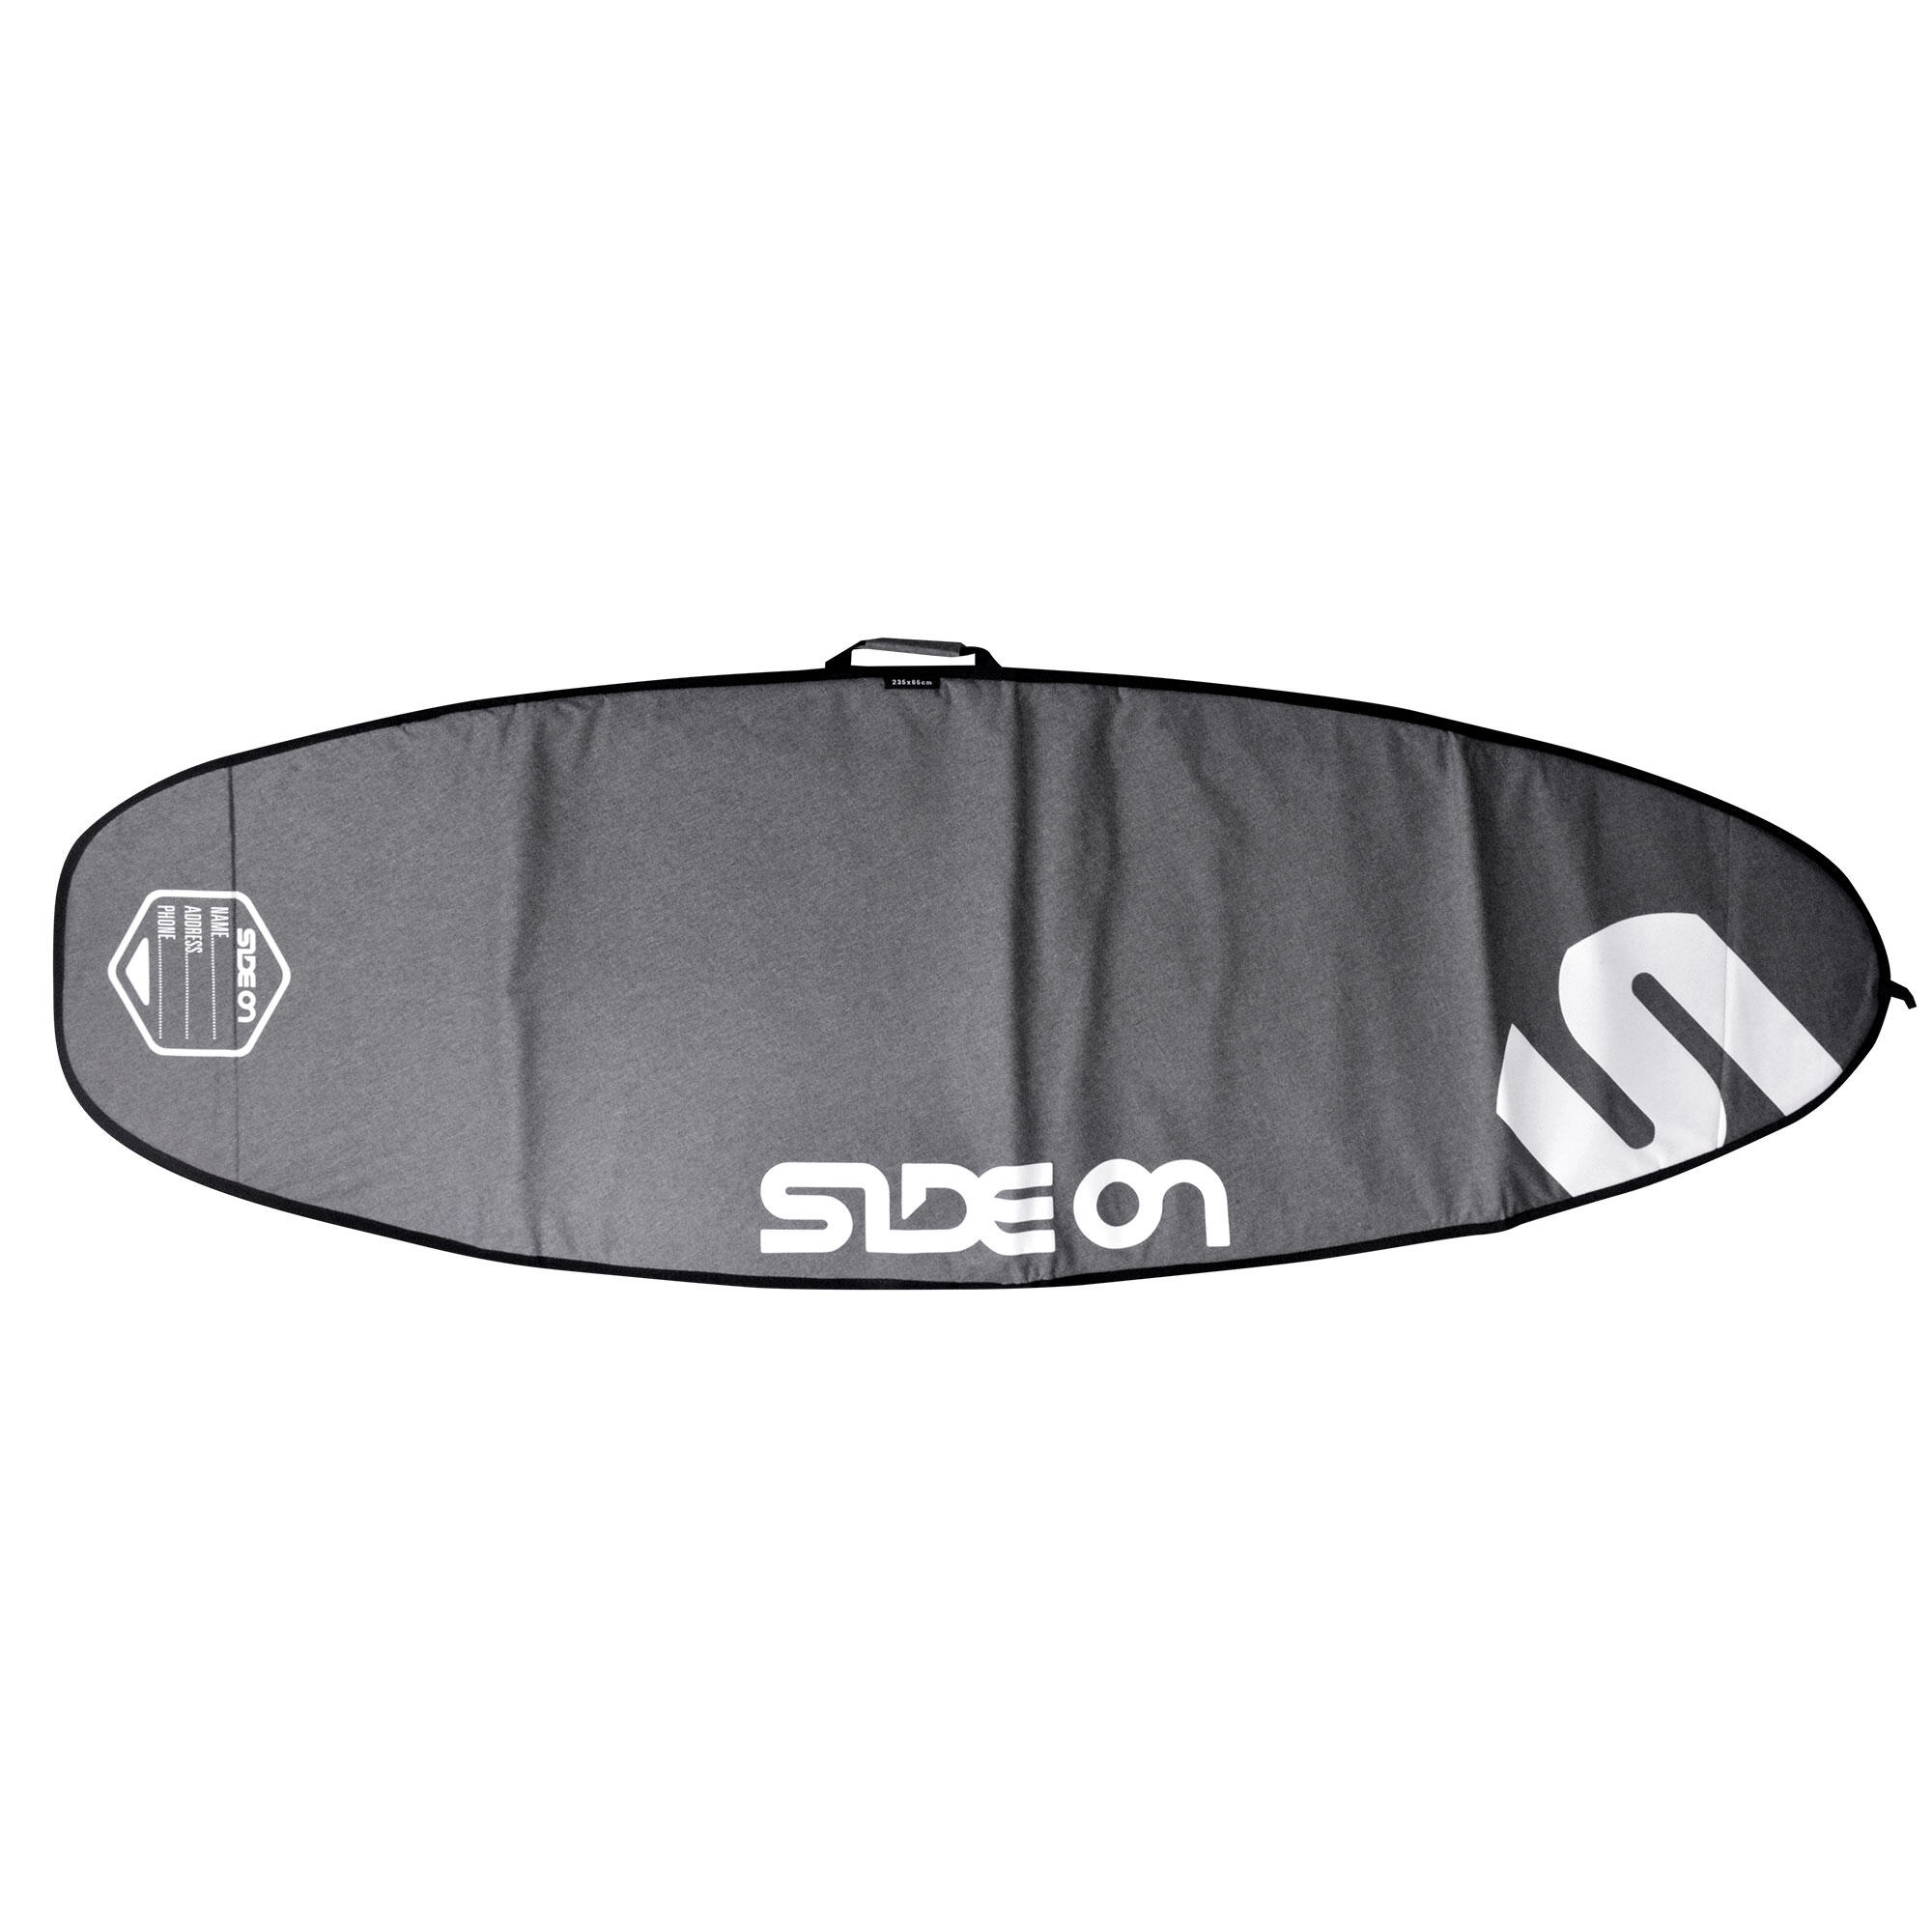 SIDE ON Boardbag Windsurfboard 235/75 cm Side On grau/weiss EINHEITSGRÖSSE